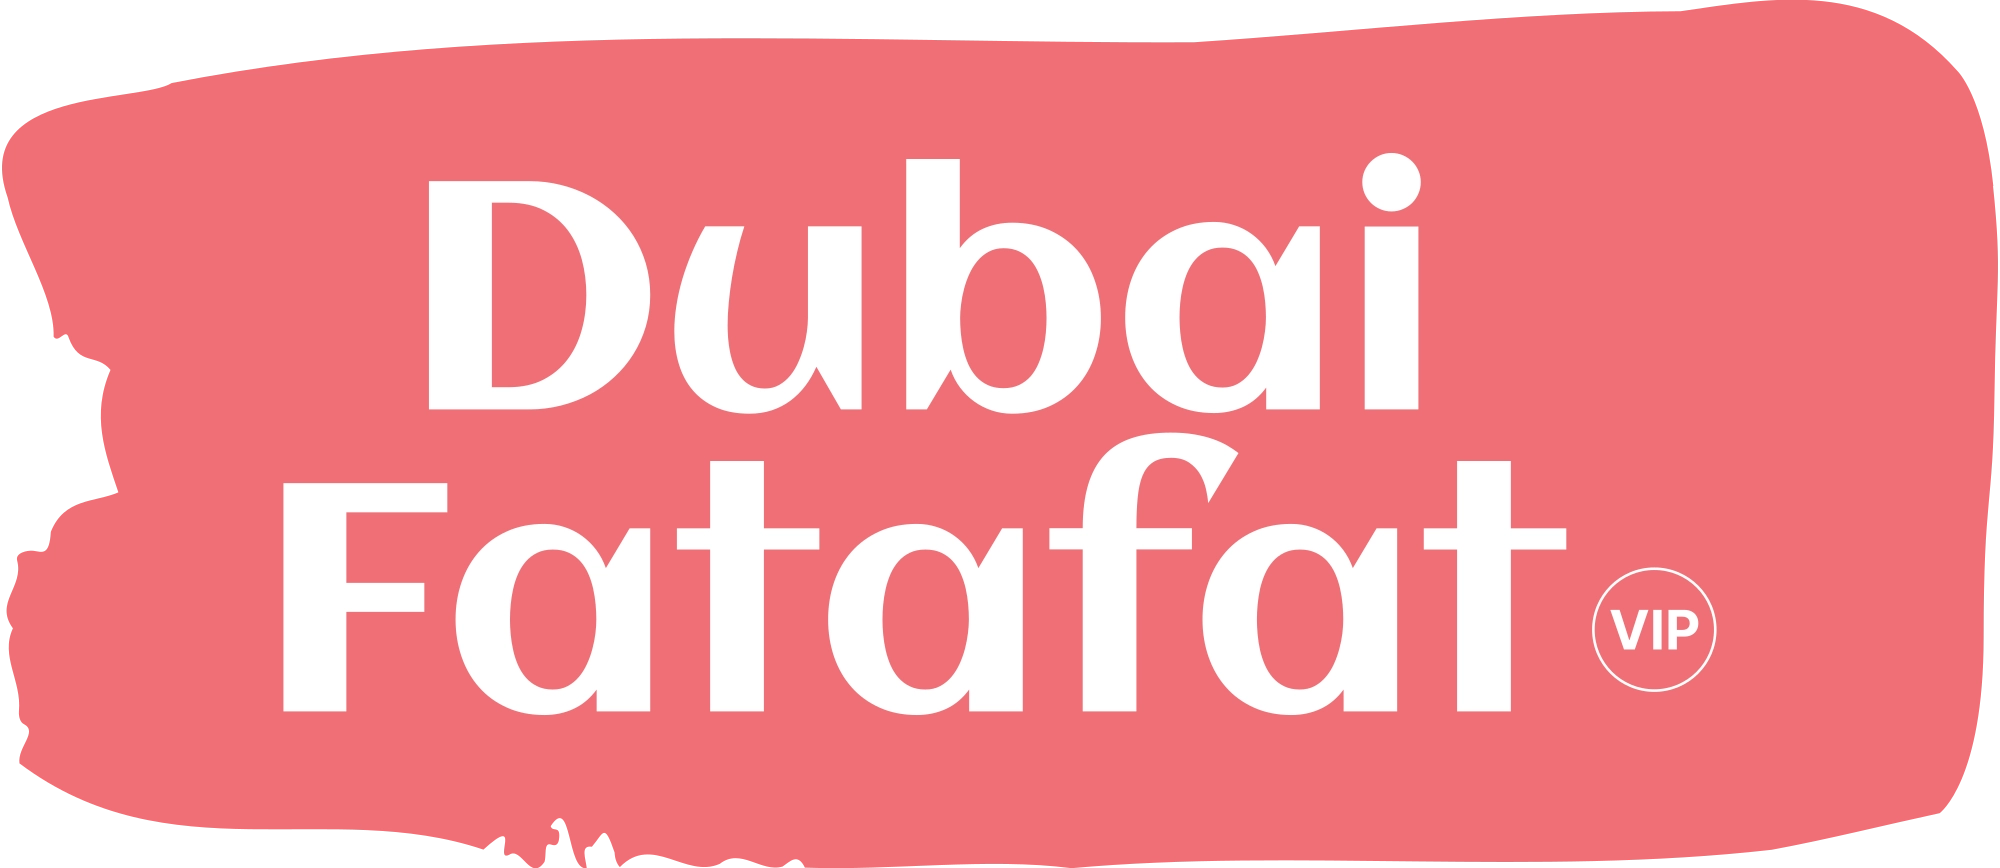 Dubai Fatafat